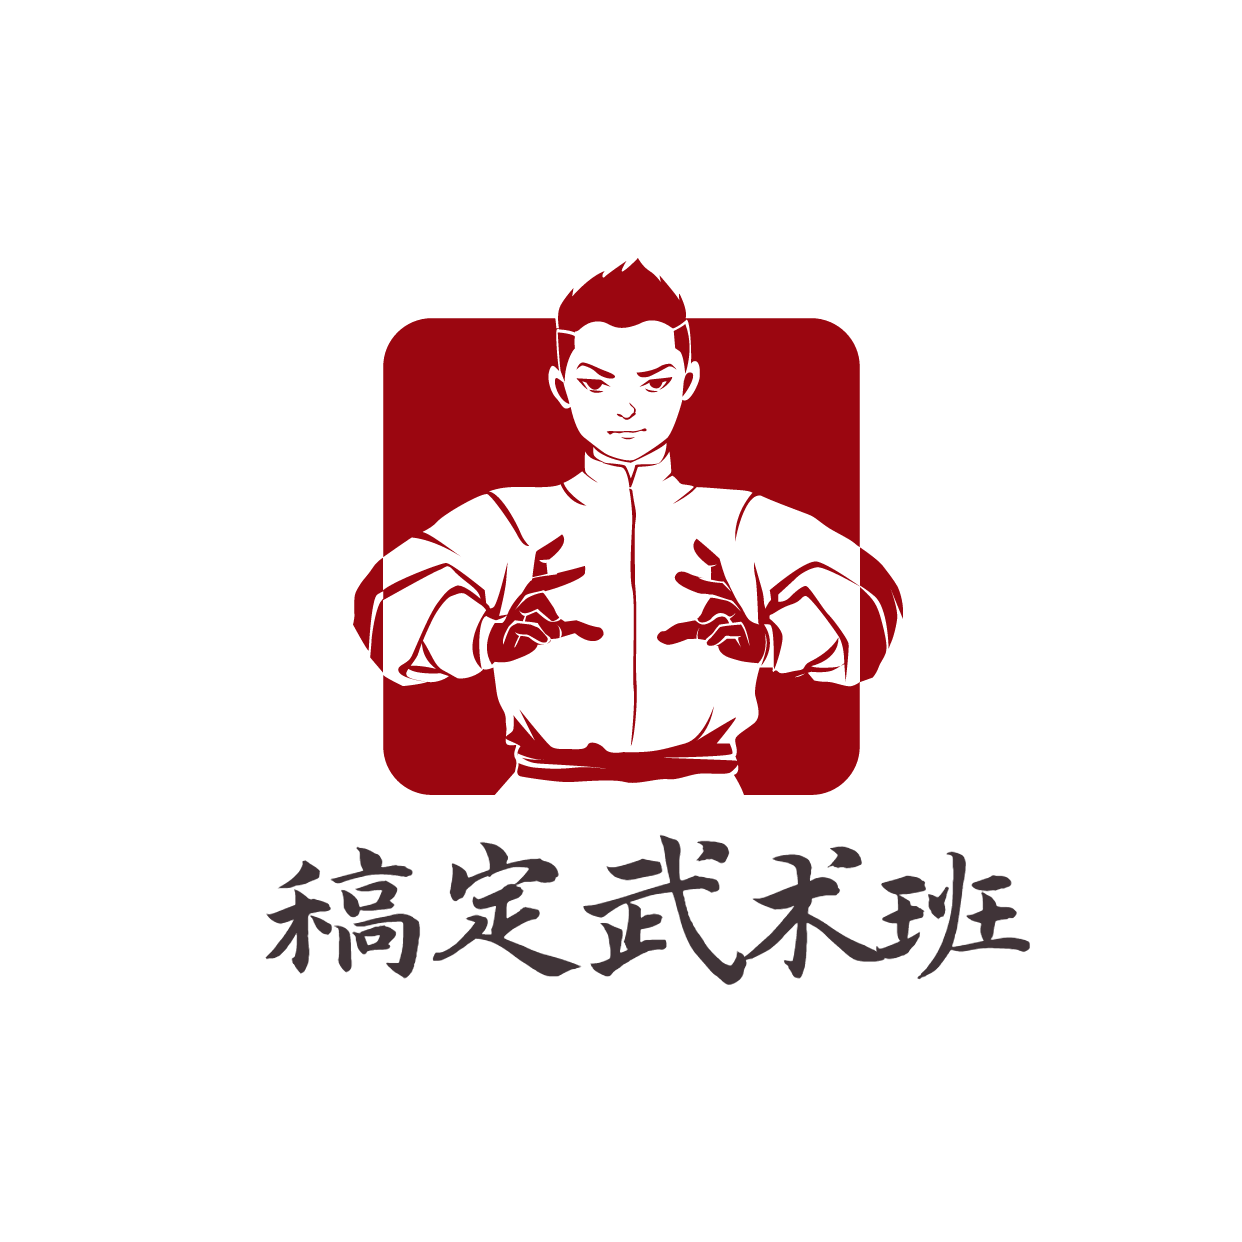 教育培训机构武术班logo